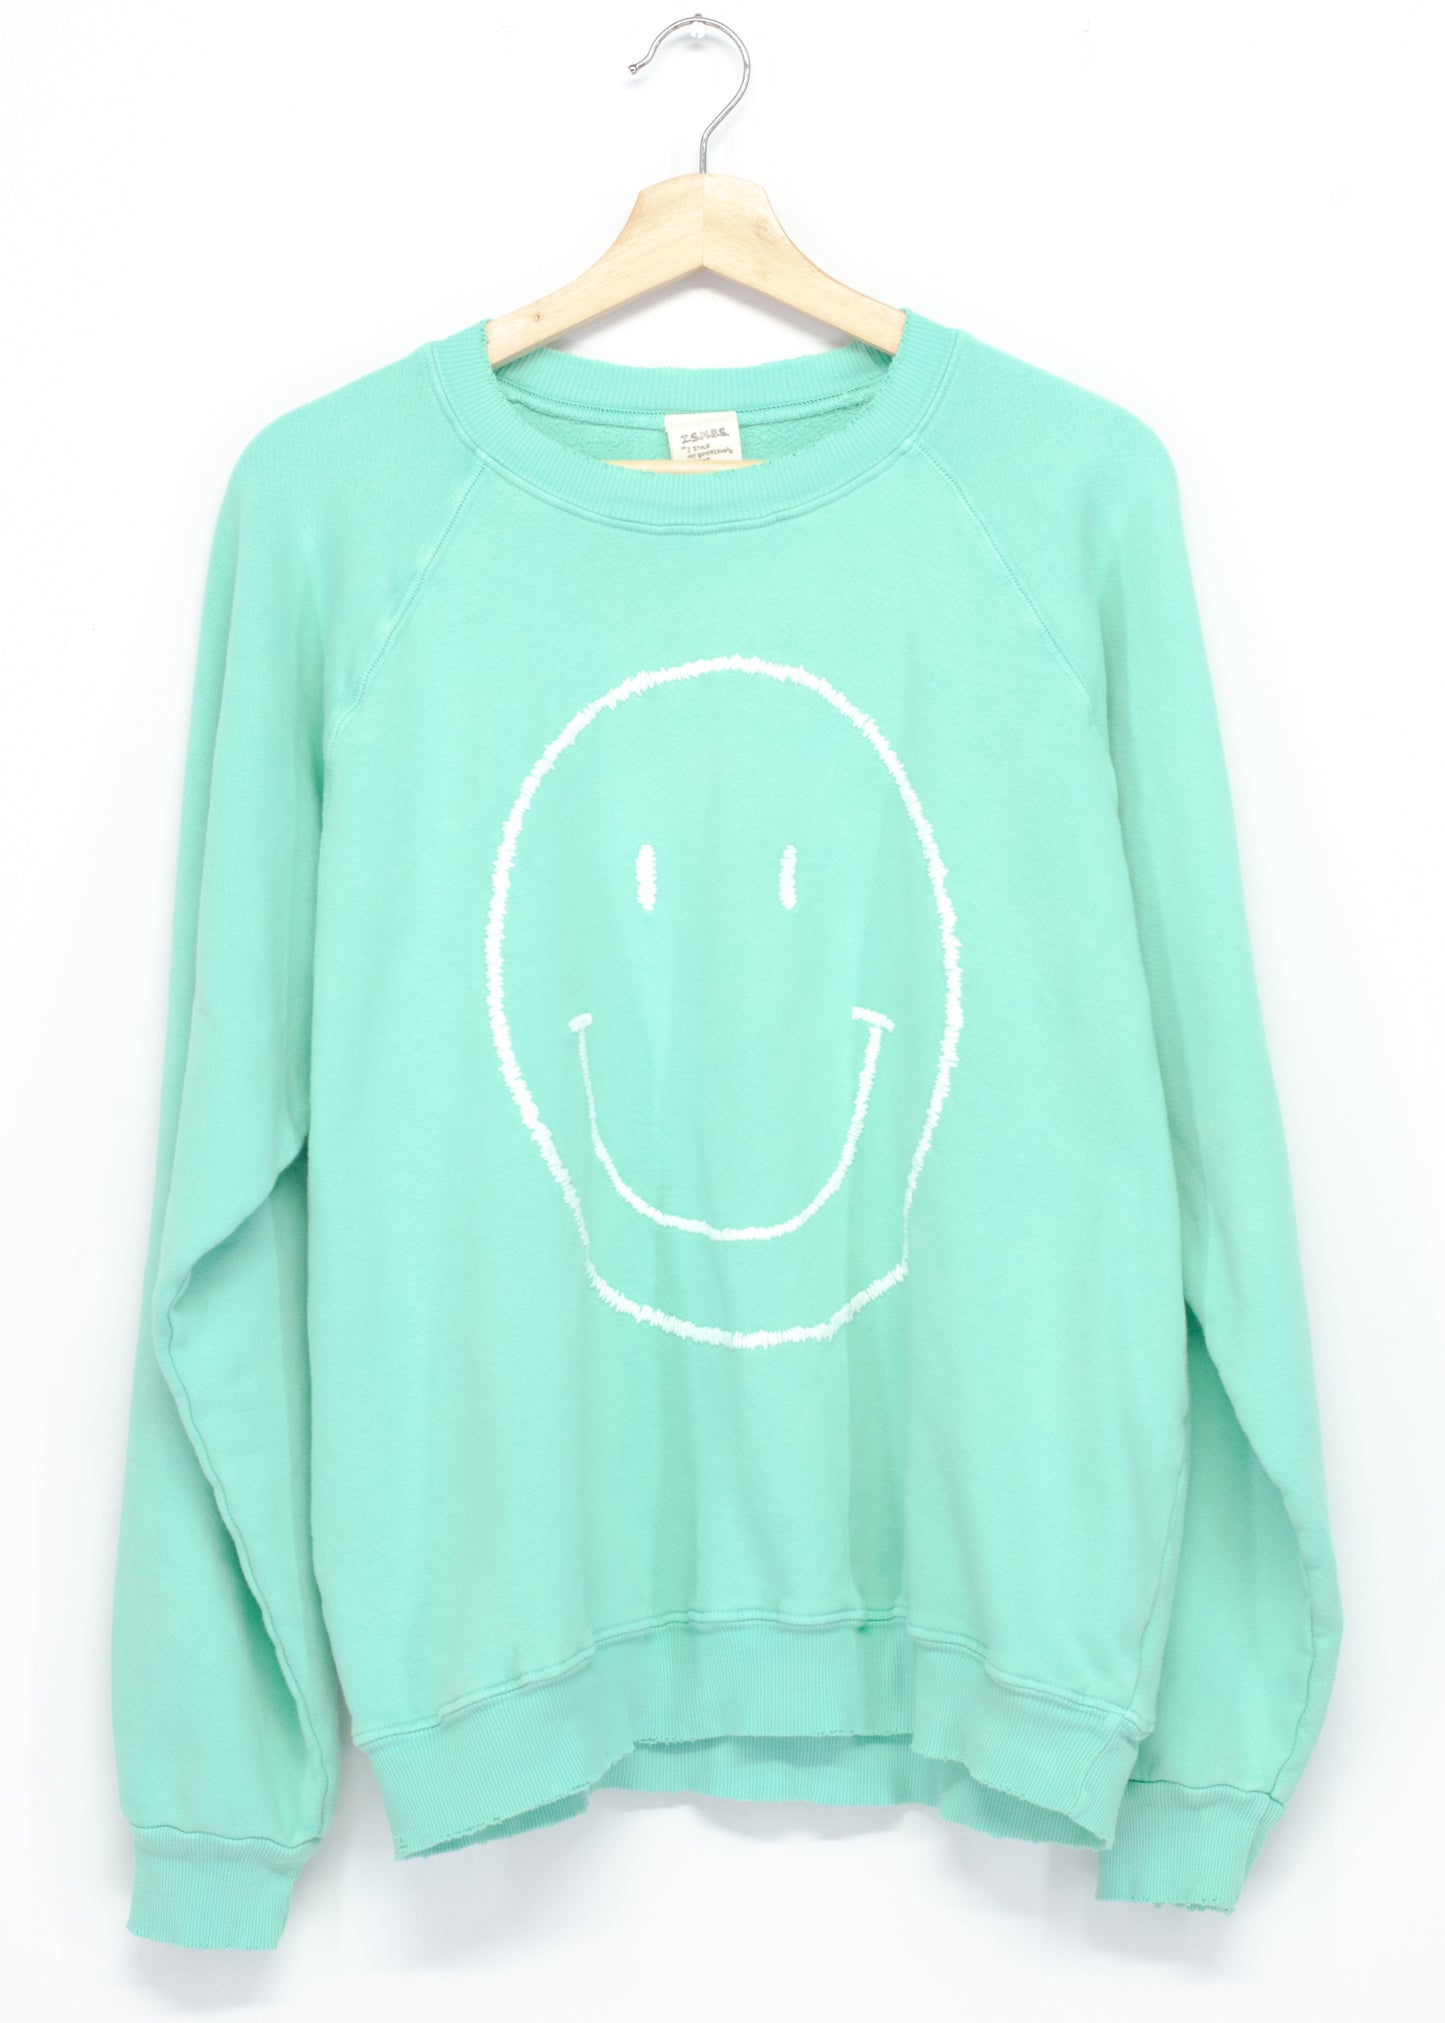 Big Smiley Face Sweatshirt (7 Colors)